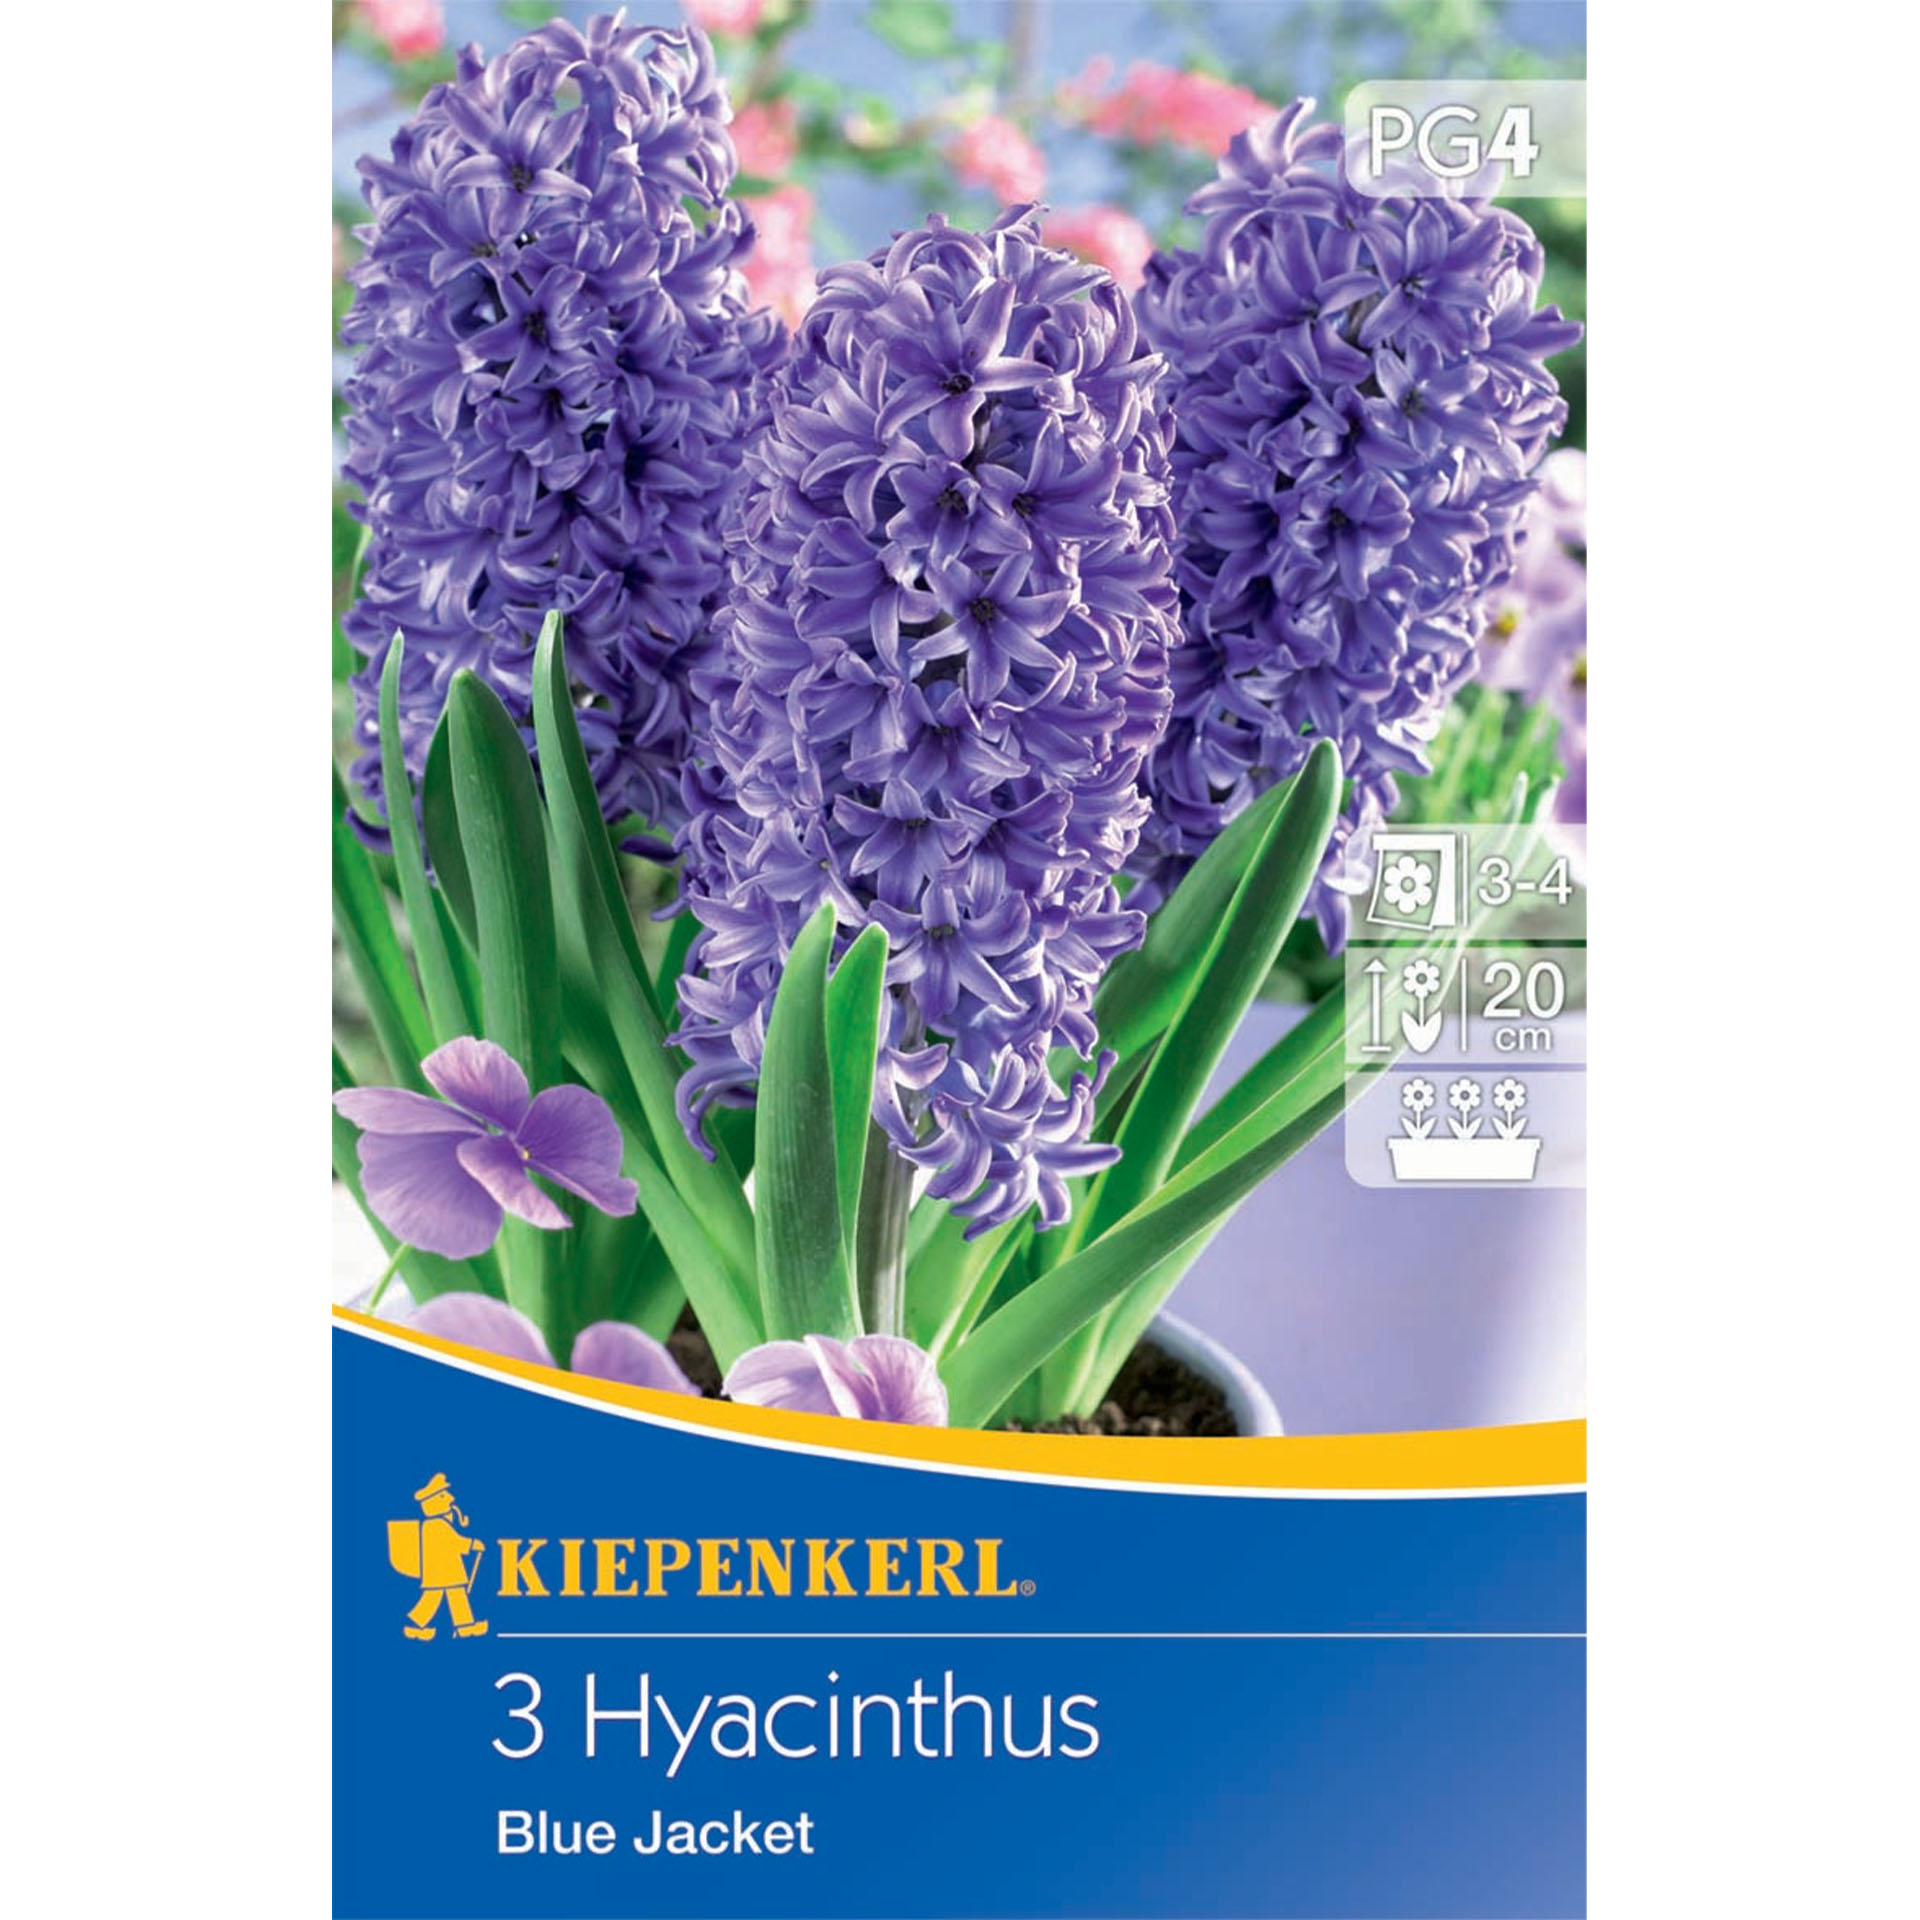 Hyacinthus "Blue Jacket"